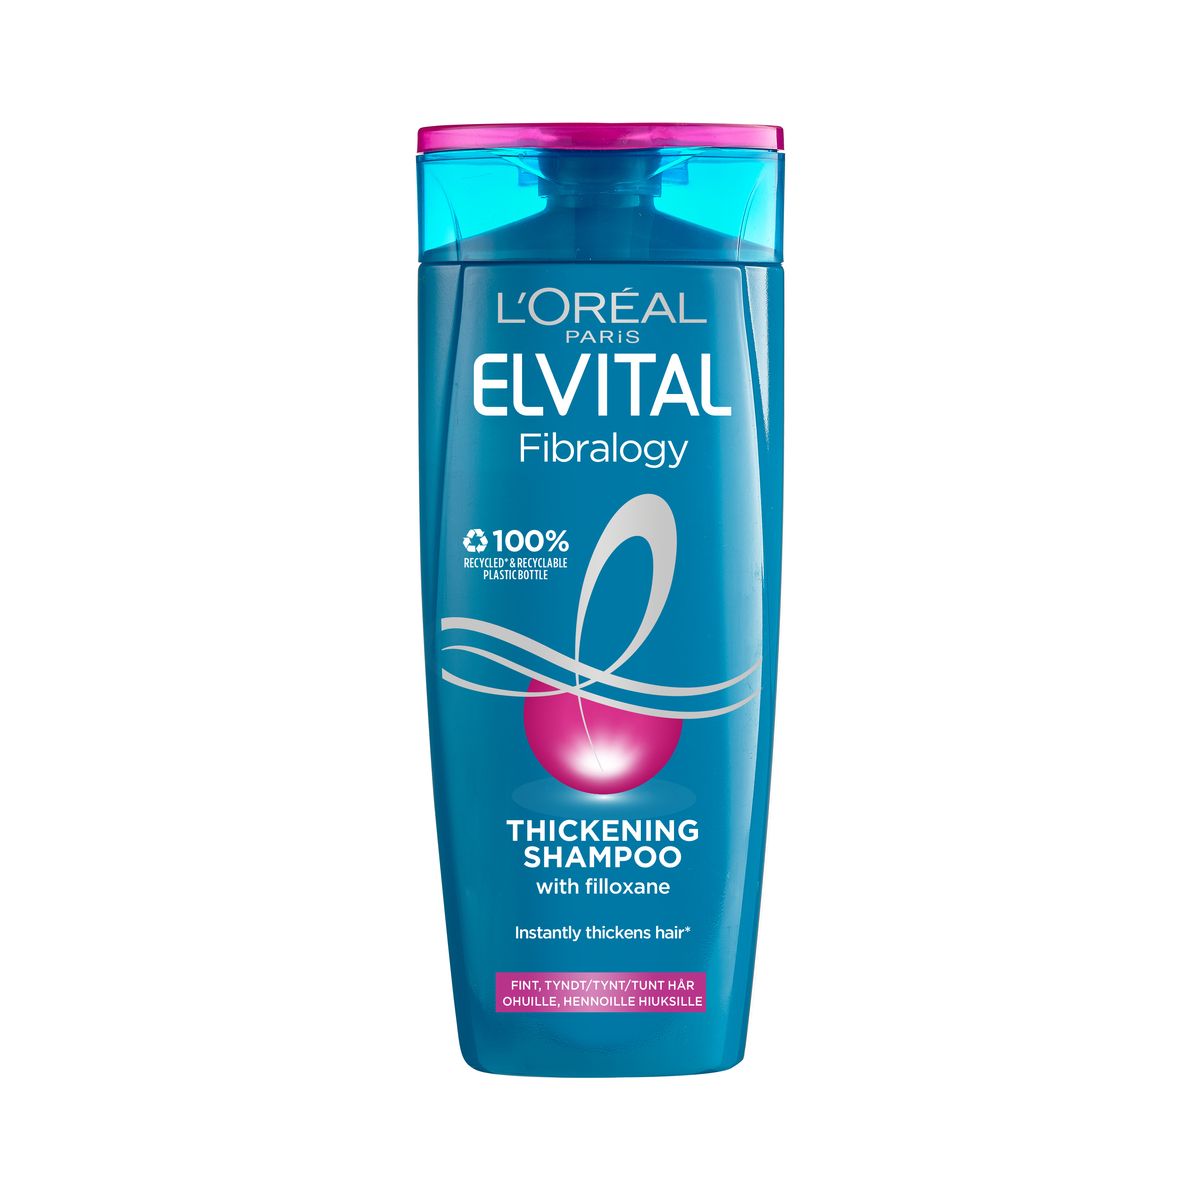 Religiøs Forfølgelse syre Køb L'Oréal Elvital Fibralogy Shampoo 250 ml hos Med24.dk